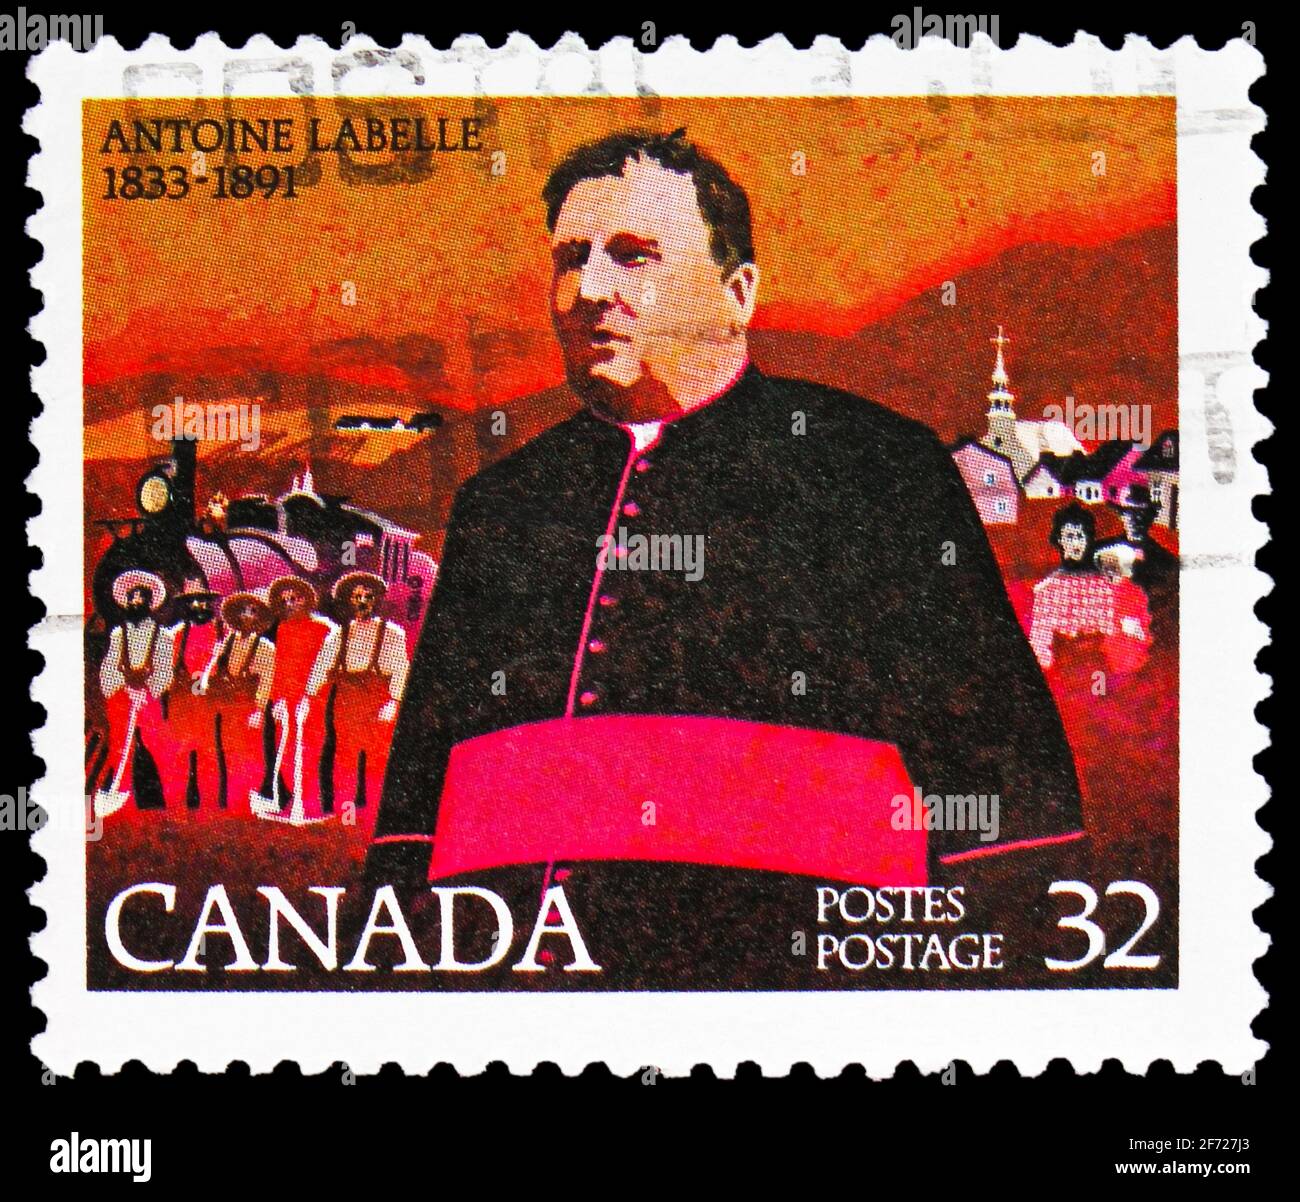 MOSKAU, RUSSLAND - 28. FEBRUAR 2021: Die in Kanada gedruckte Briefmarke zeigt Antoine Labelle, 1833-1891, Serie der Sozialreformer des 19. Jahrhunderts, um 1983 Stockfoto